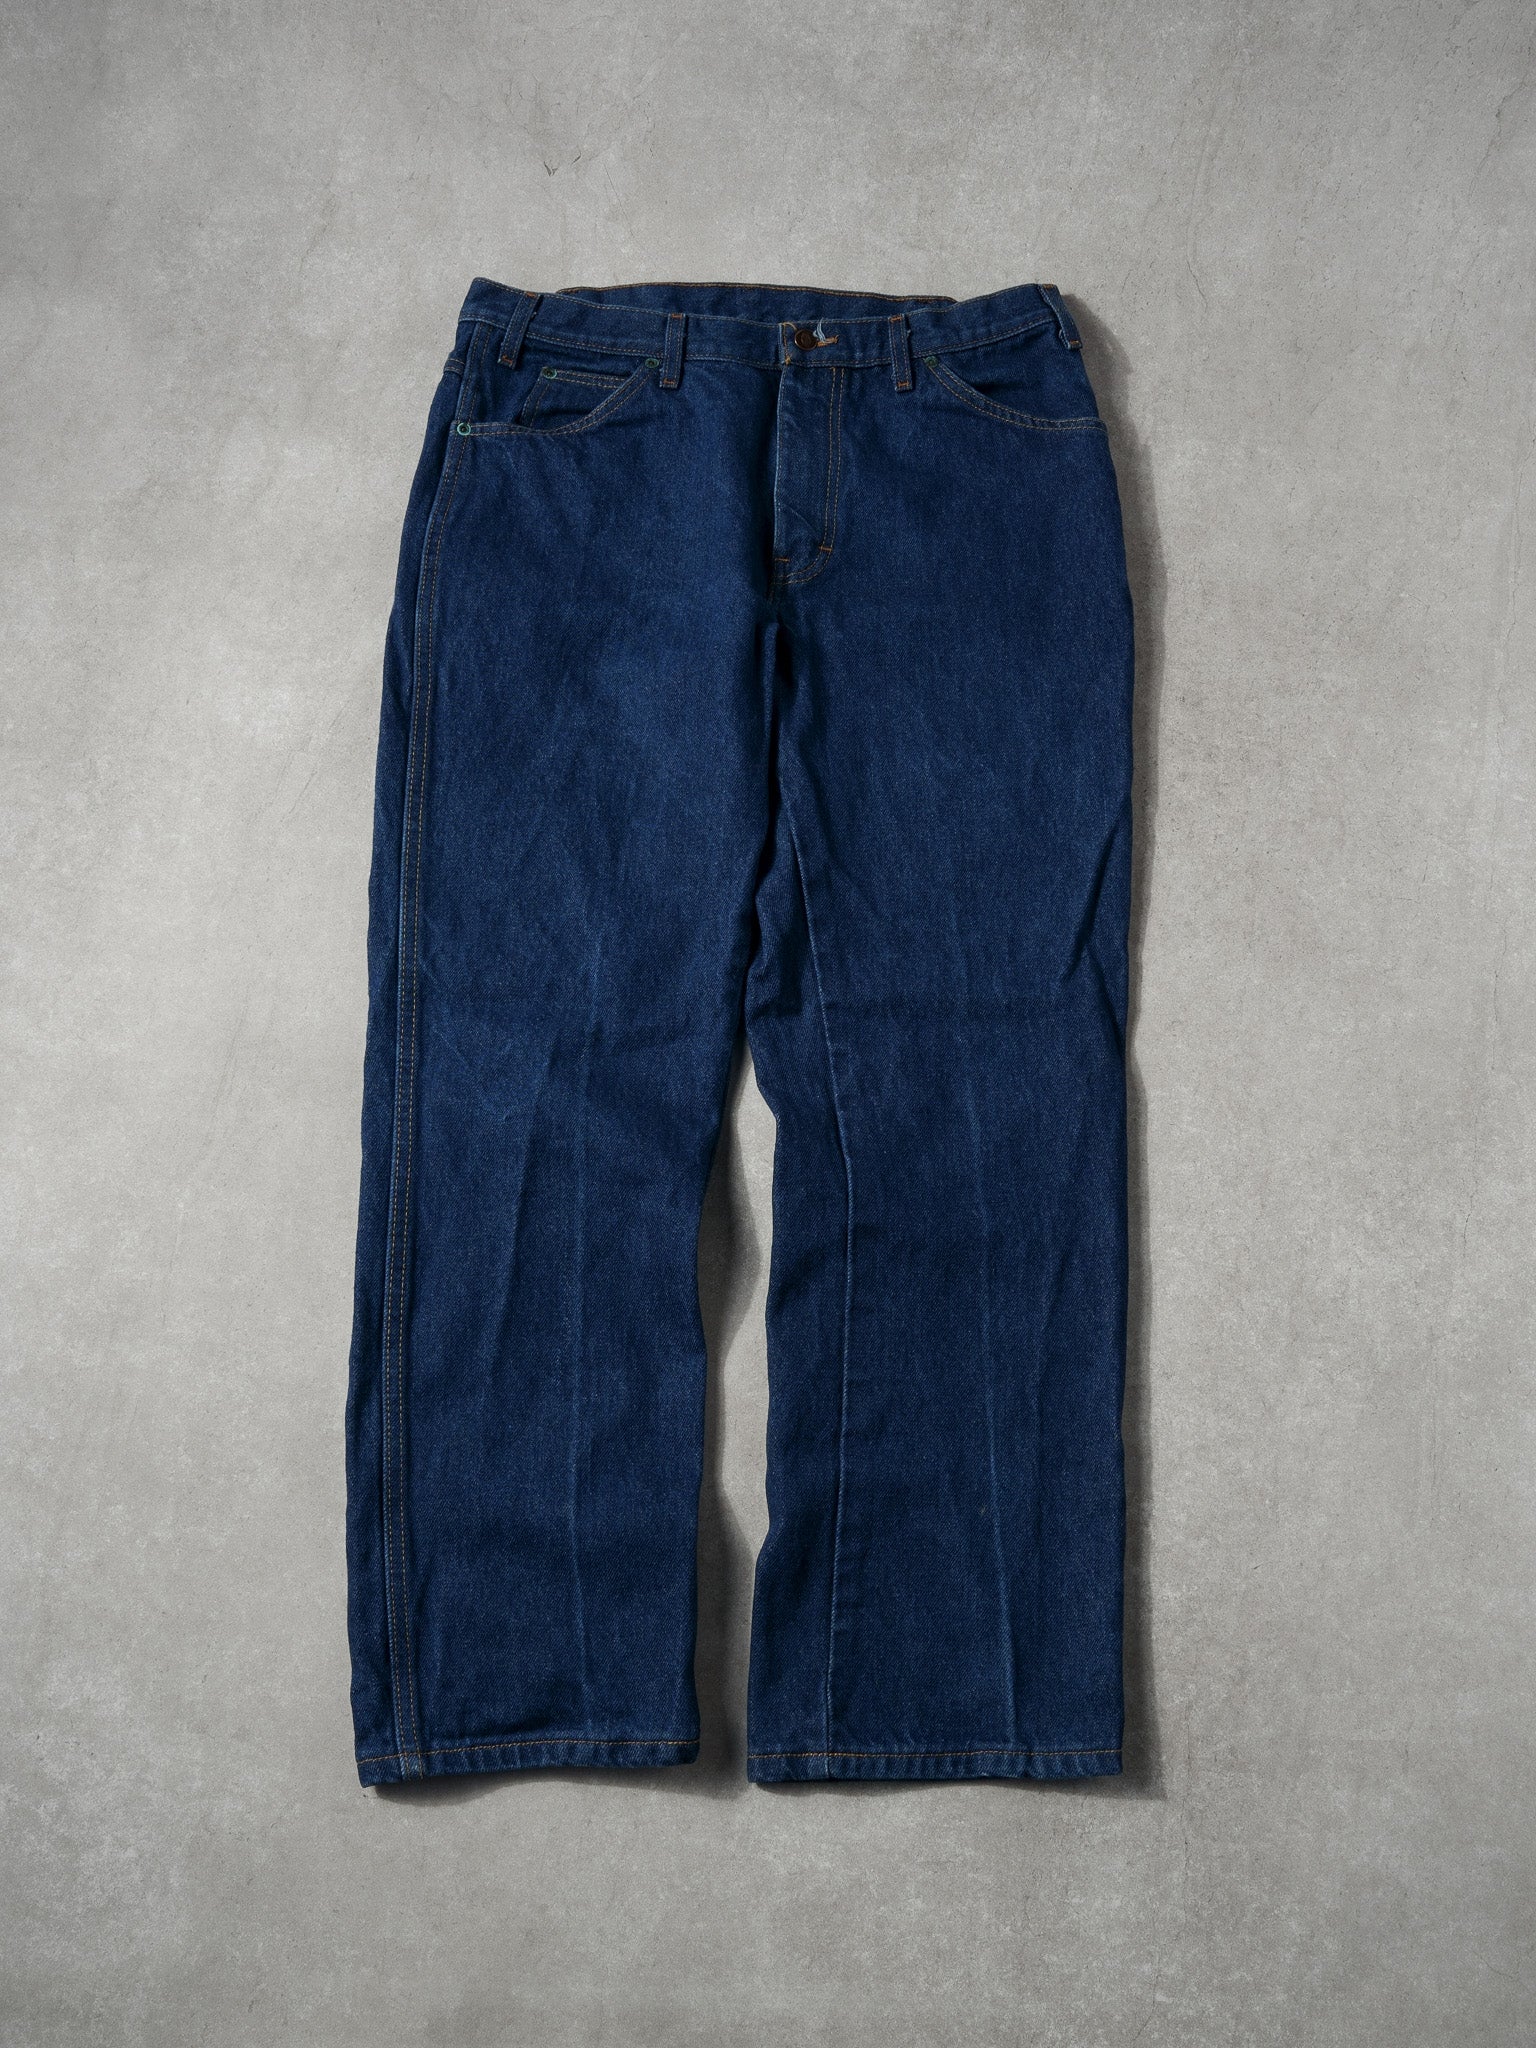 Vintage 90s Dark Blue Dickies Straight Denim Jeans (36x30)